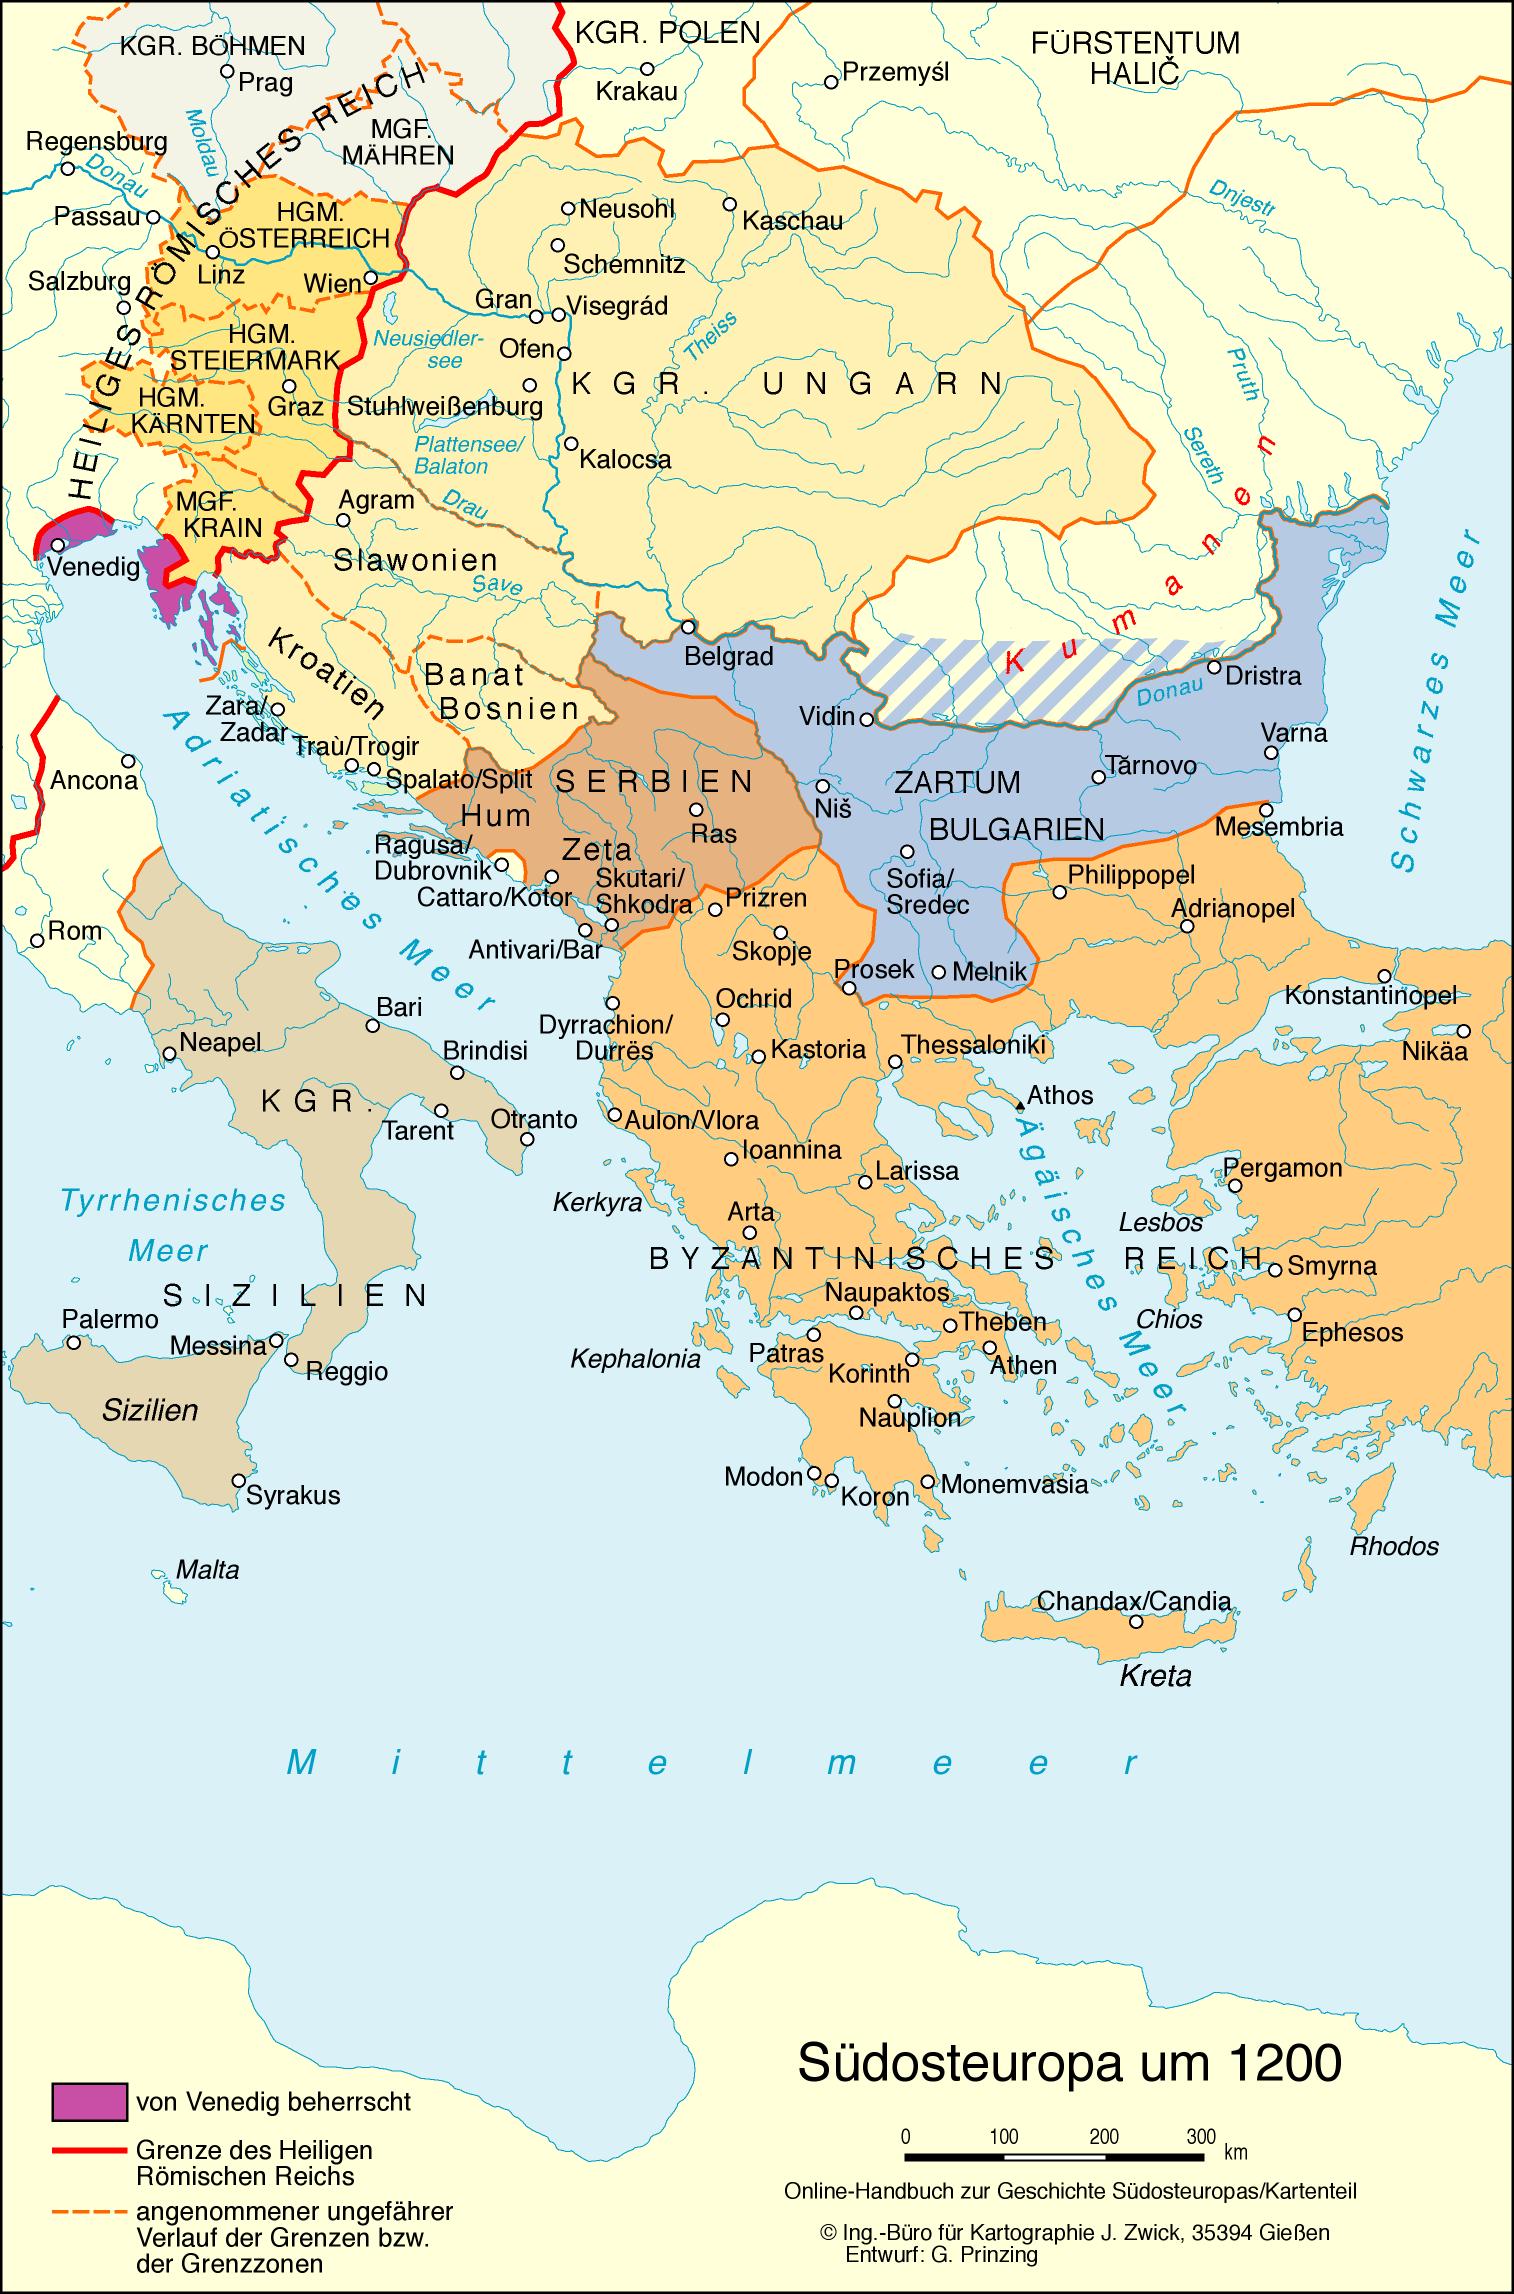 Südosteuropa um 1200